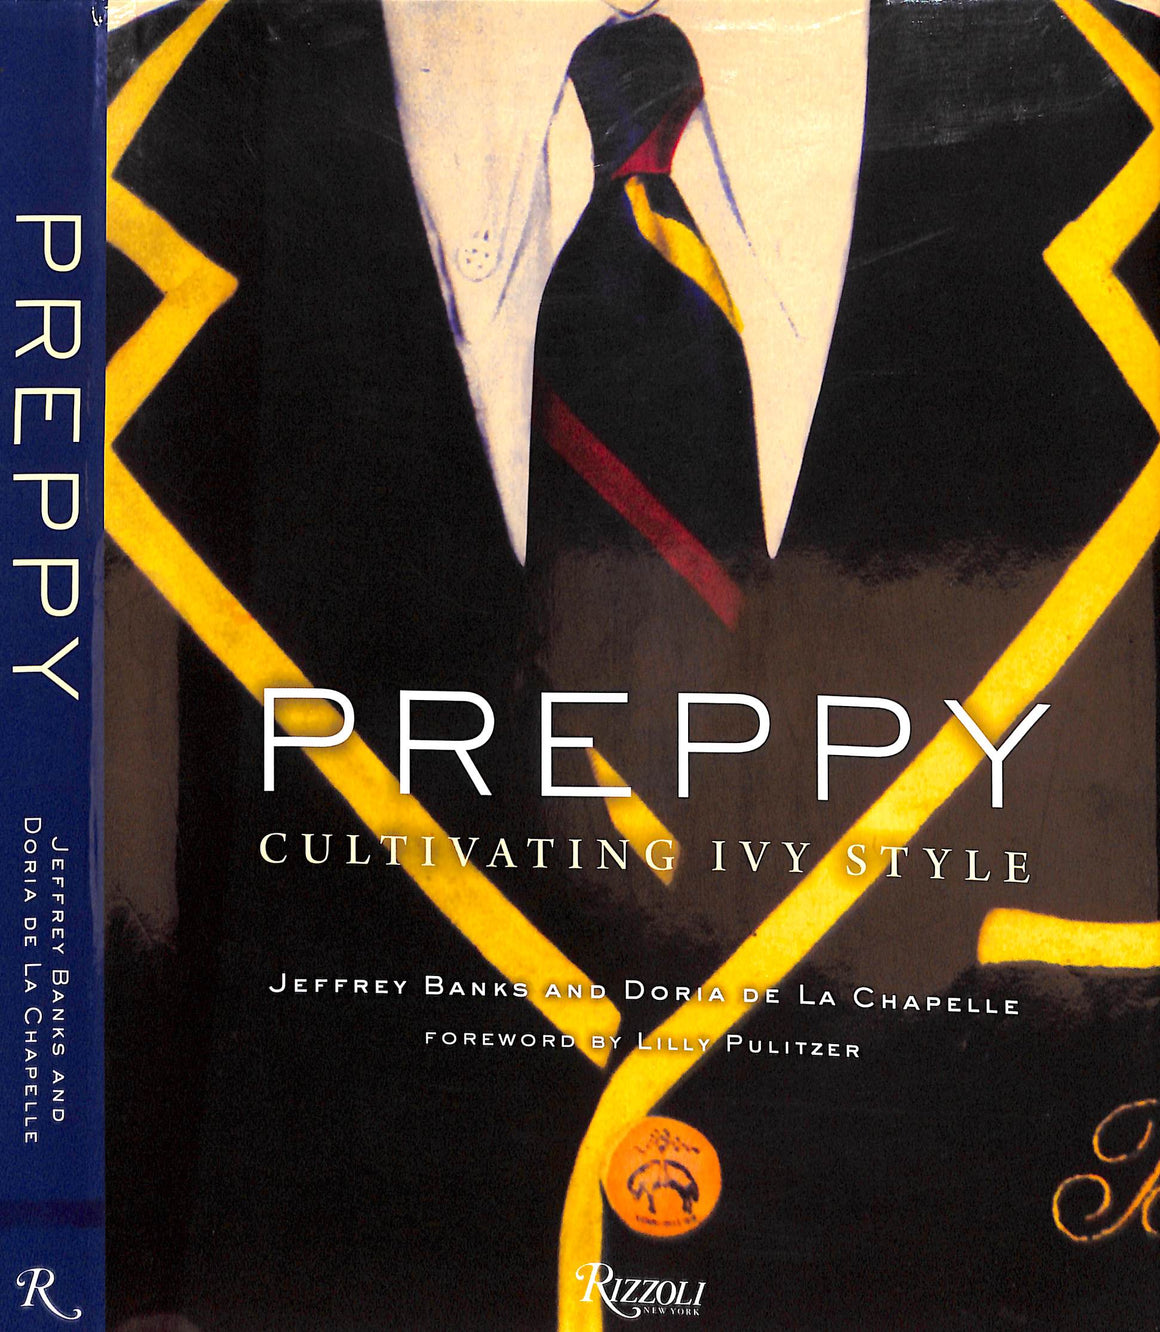 "Preppy: Cultivating Ivy Style" 2011 BANKS, Jeffrey and DE LA CHAPELLE, Doria (SOLD)